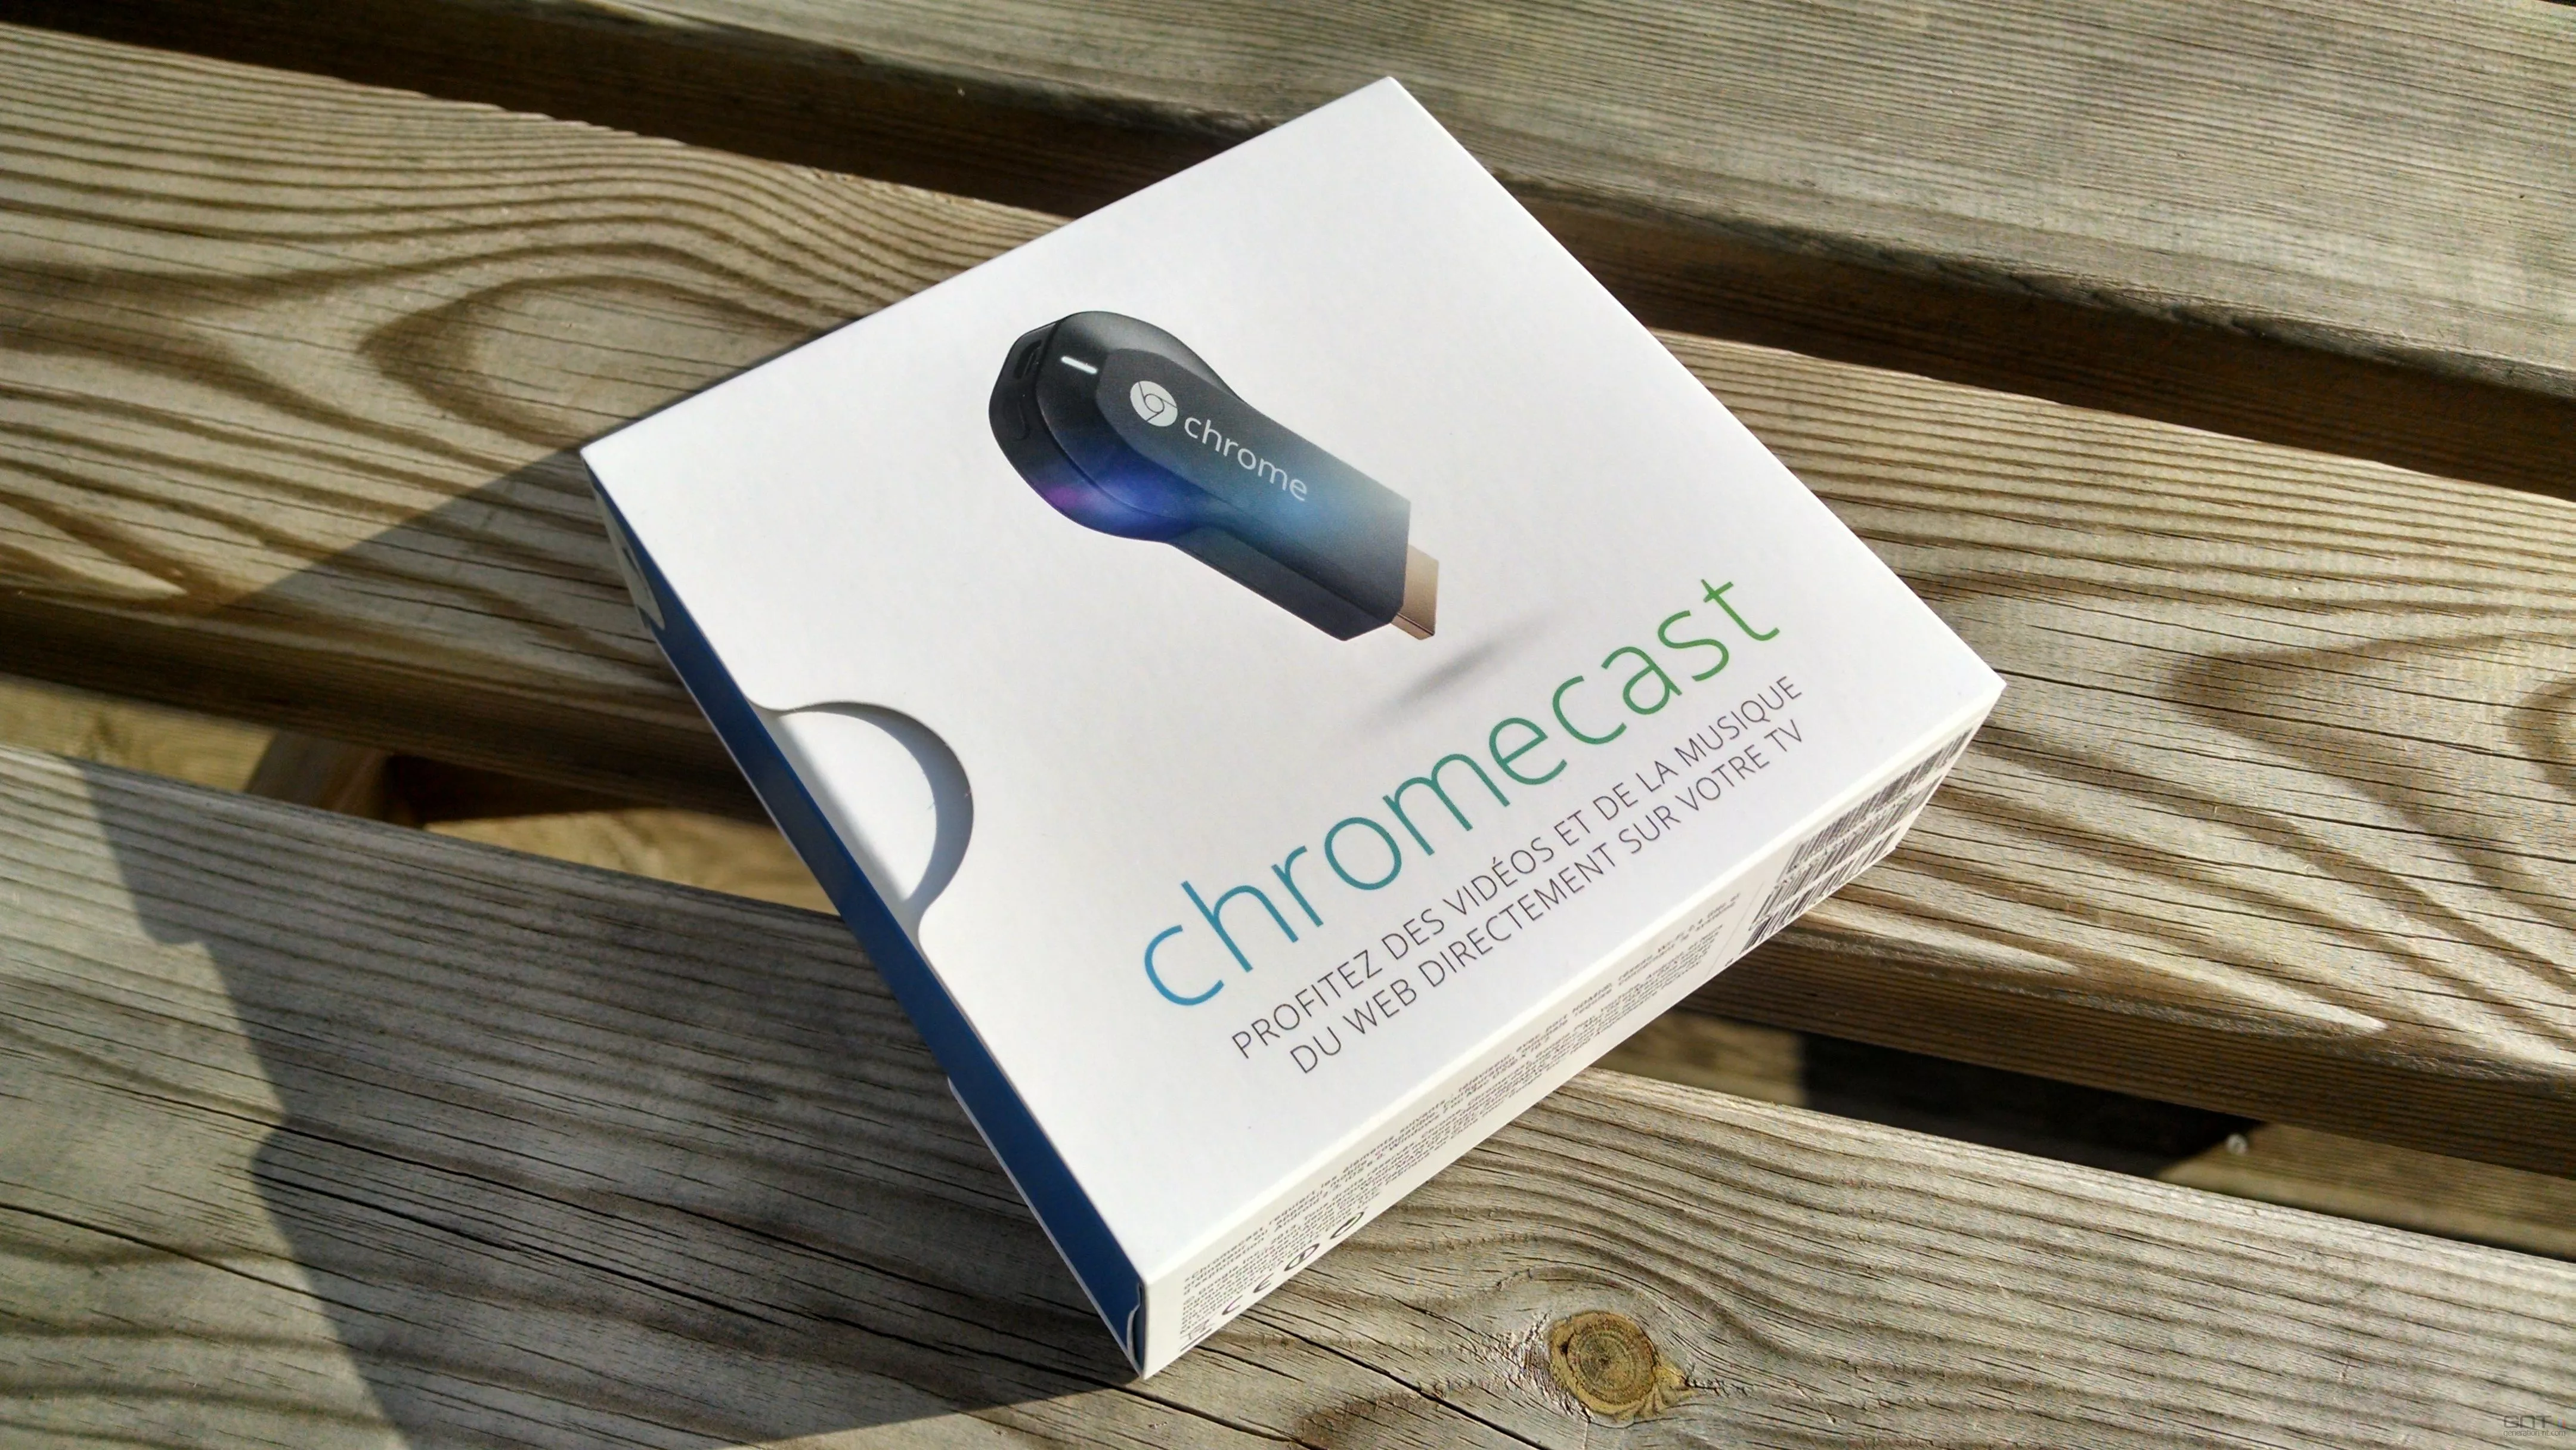 Test : Chromecast de Google